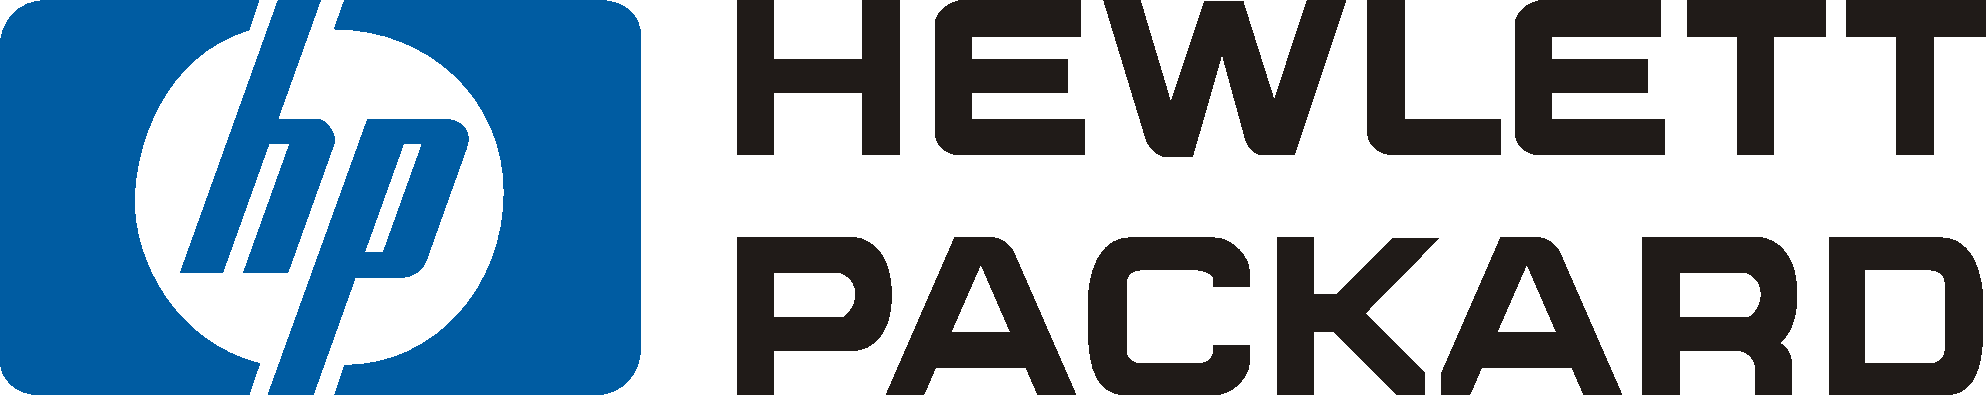 HP Hewlett-Packard Logo - Hewlett Packard. Criteo Success Story